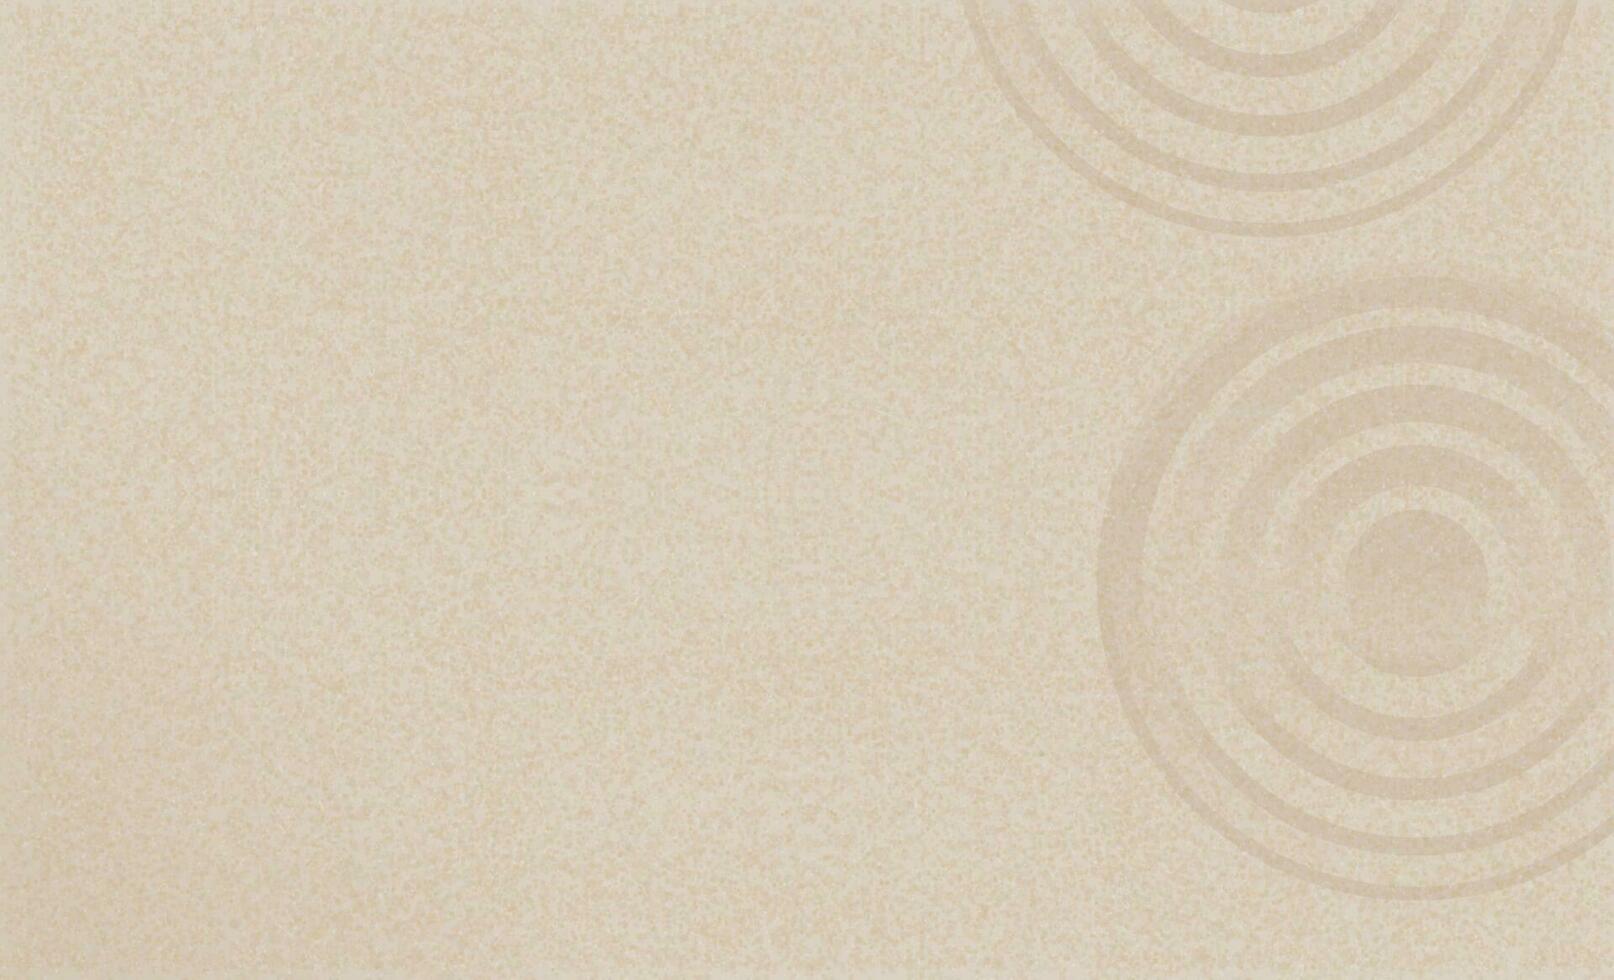 zand strand structuur met gemakkelijk geestelijk patronen in Japans zen tuin met concentrisch cirkels en parallel lijnen geharkt Aan glad zanderig oppervlakte achtergrond, harmonie, meditatie, zen Leuk vinden concept vector